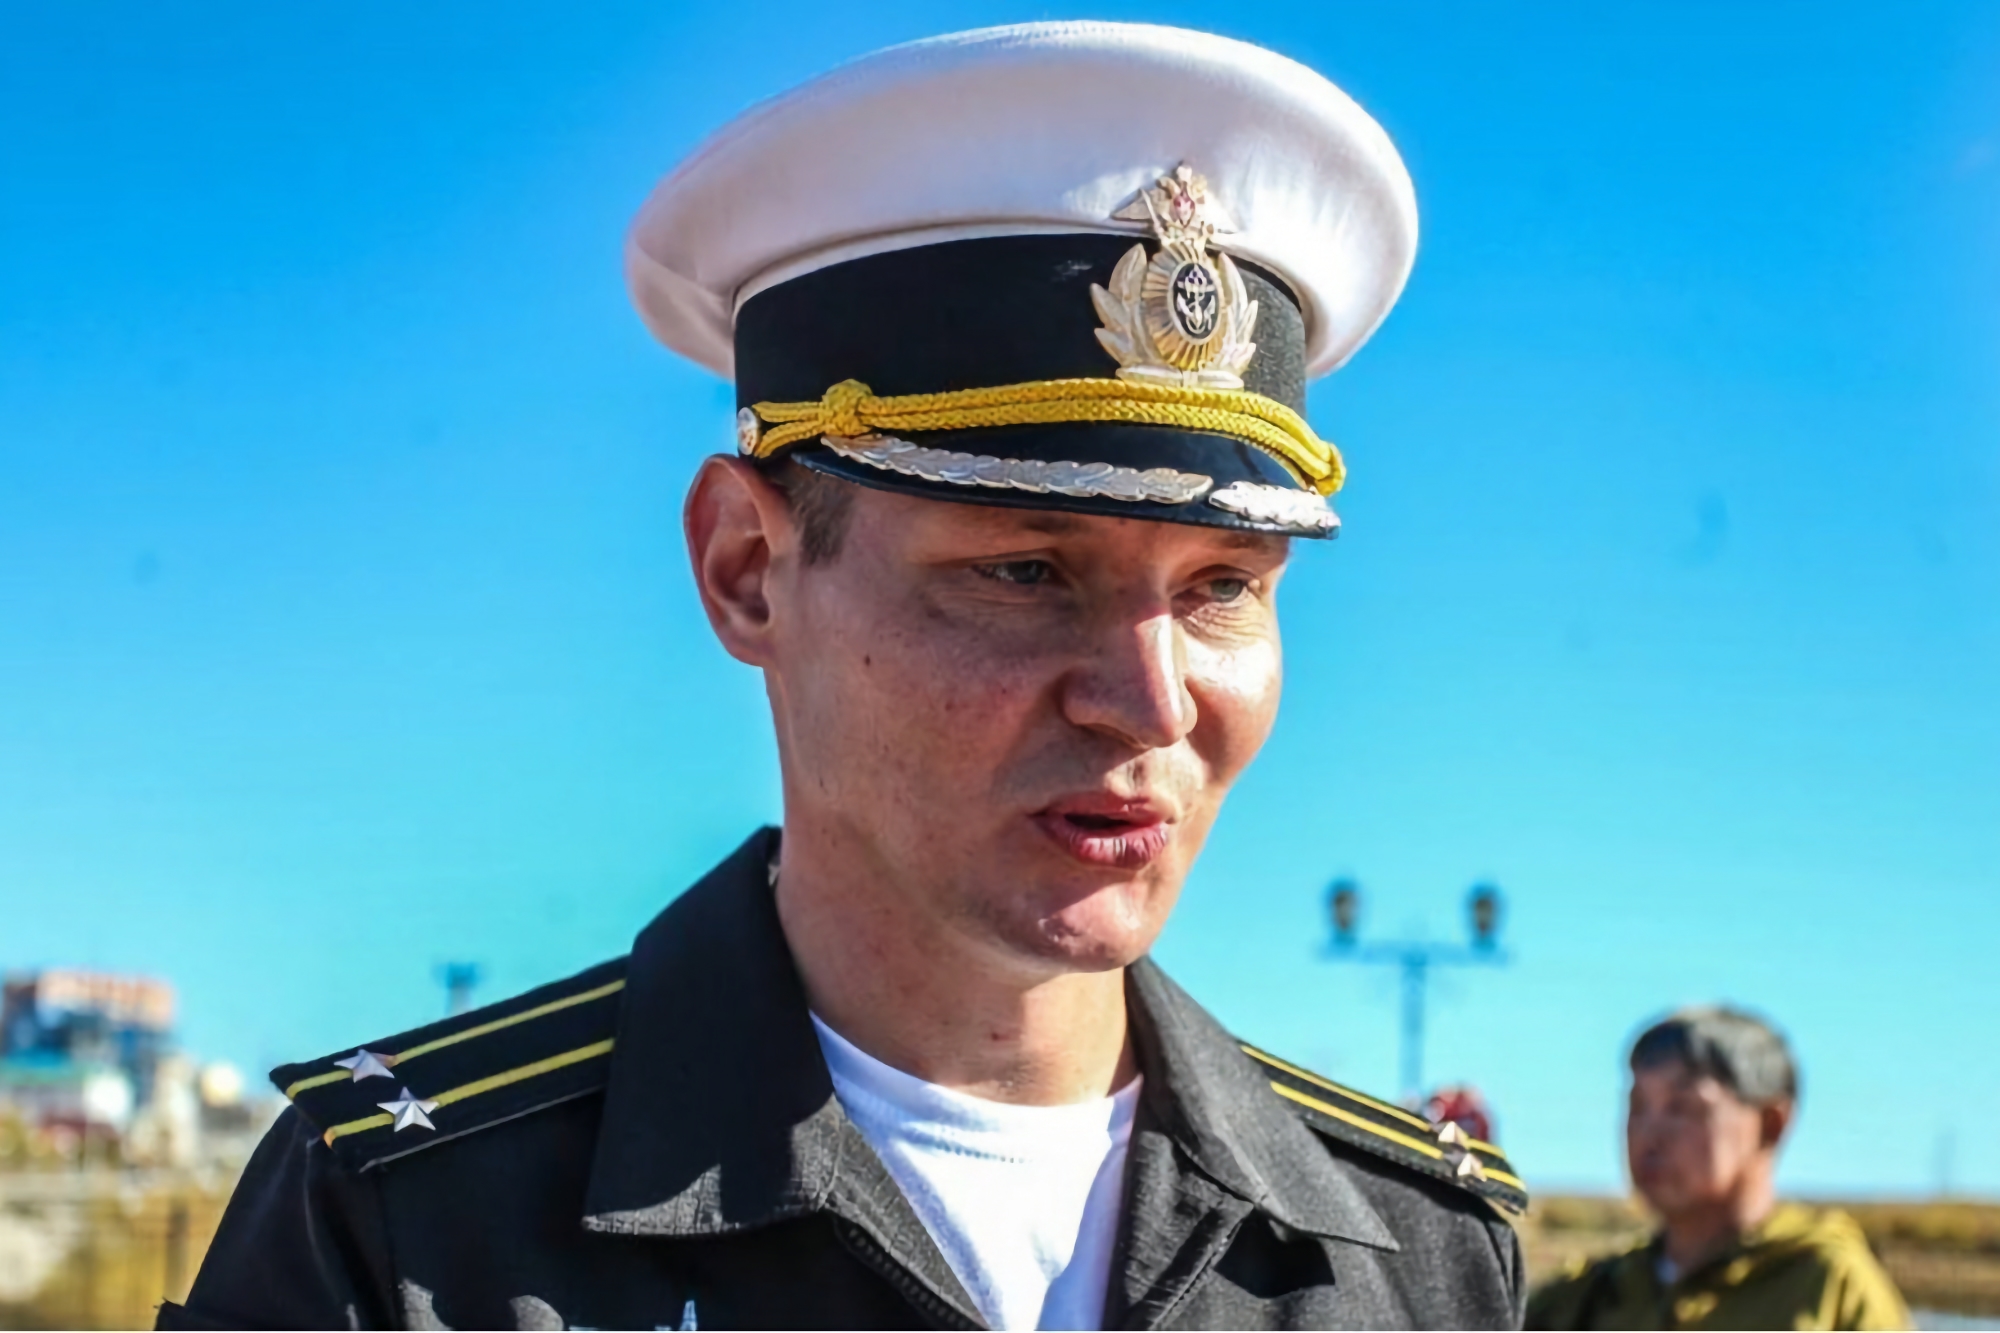 El comandante del submarino Krasnodar, Stanislav Rzhitsky, asesinado en Rusia, fue localizado a través de la aplicación Strava